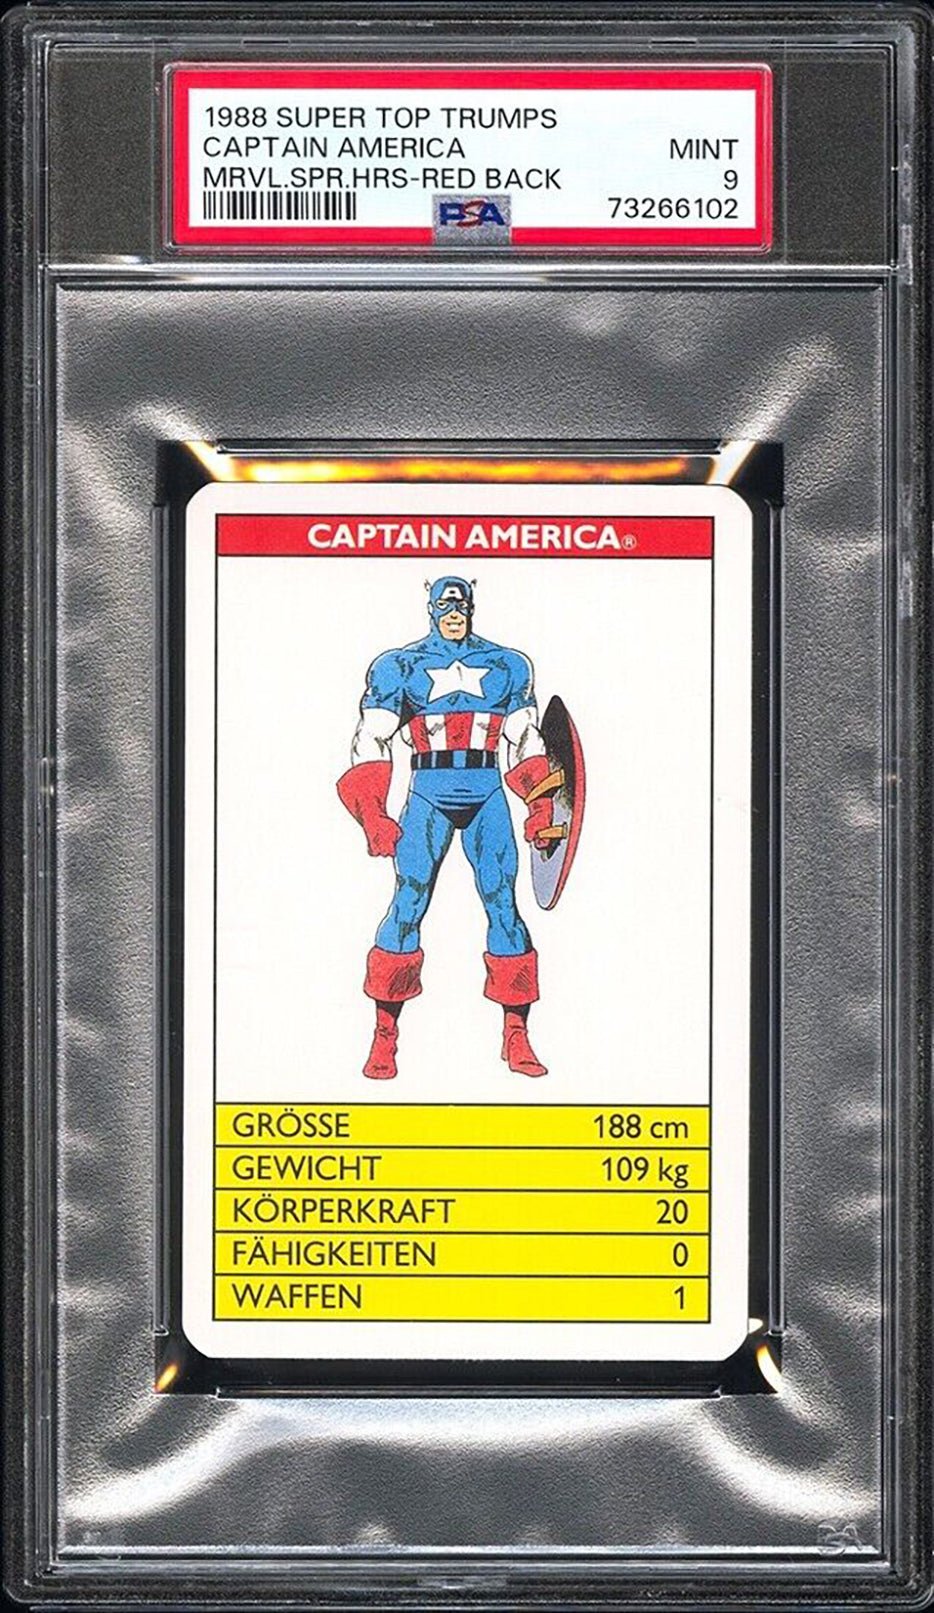 CAPTAIN AMERICA PSA 9 1988 Super Top Trumps Marvel Super Heroes Red Back C2 Marvel Base Graded Cards - Hobby Gems